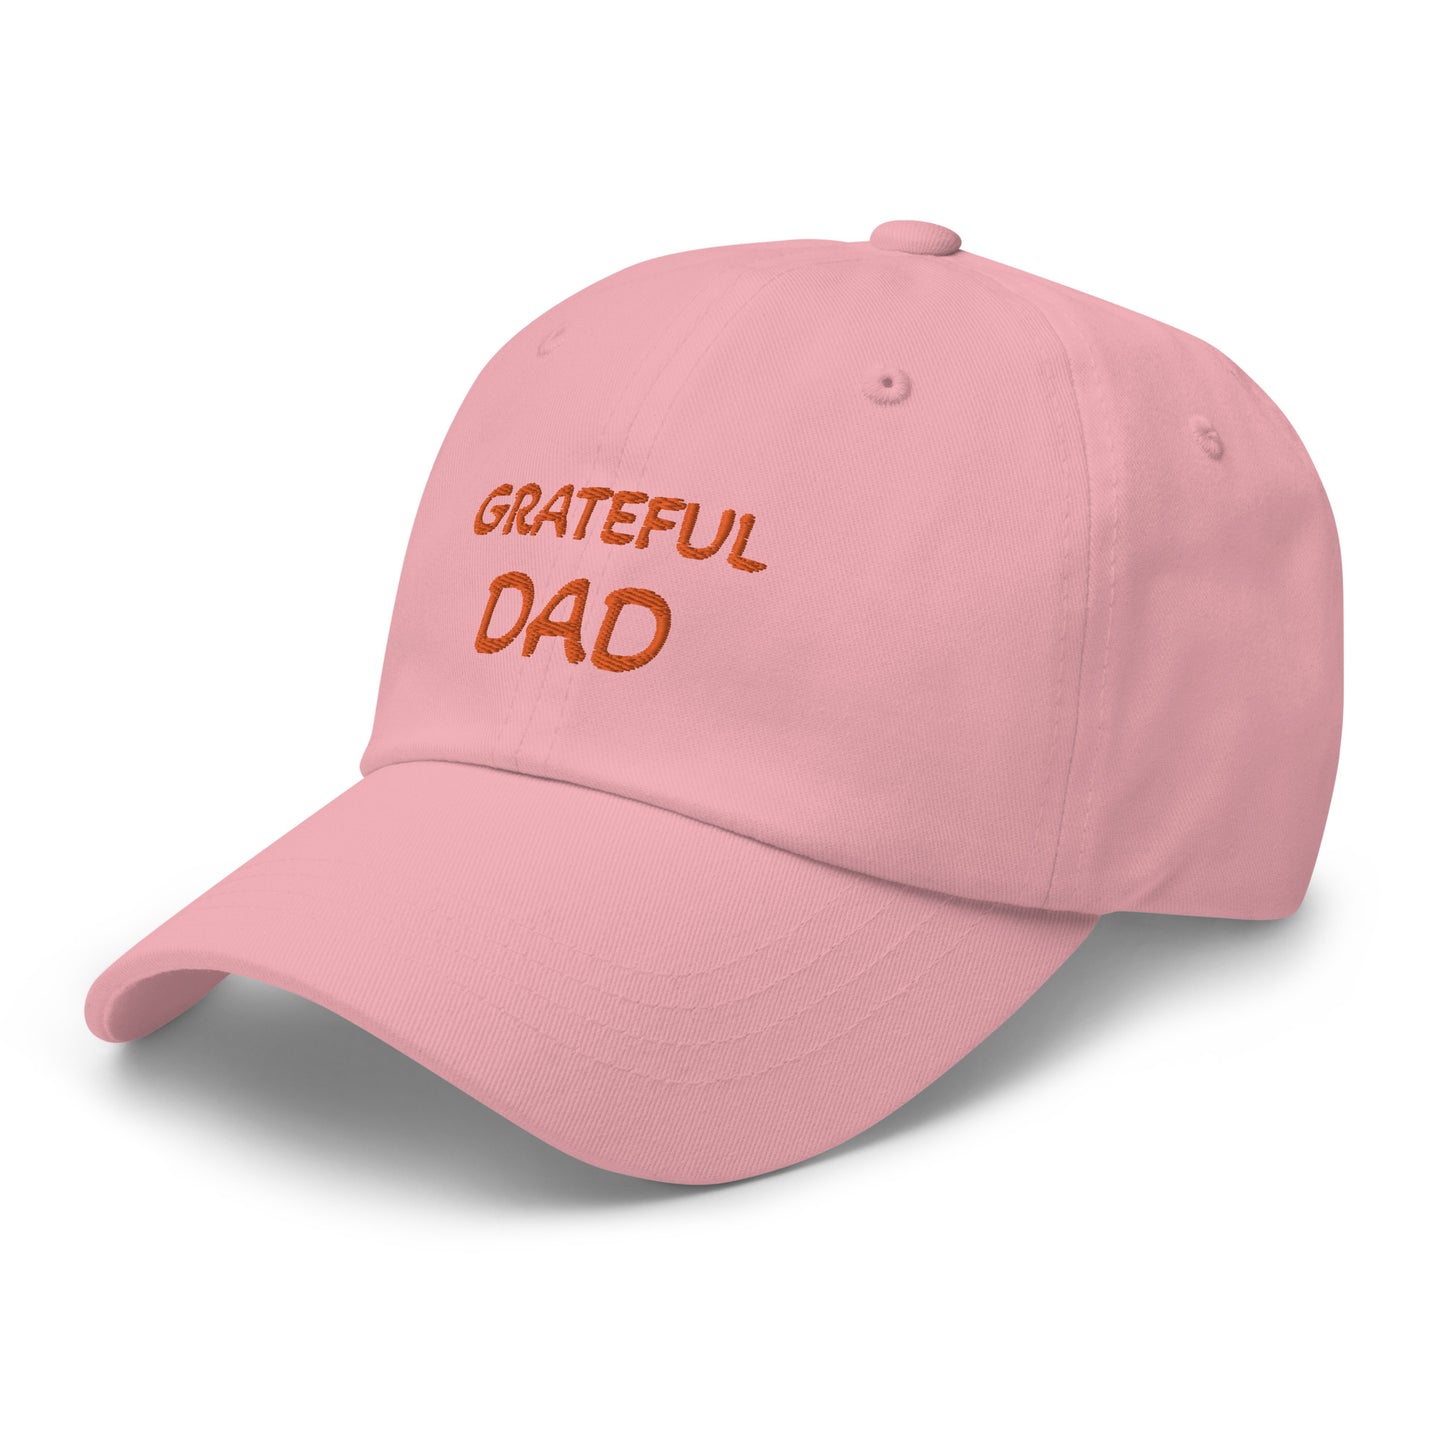 GRATEFUL DAD Dad hat